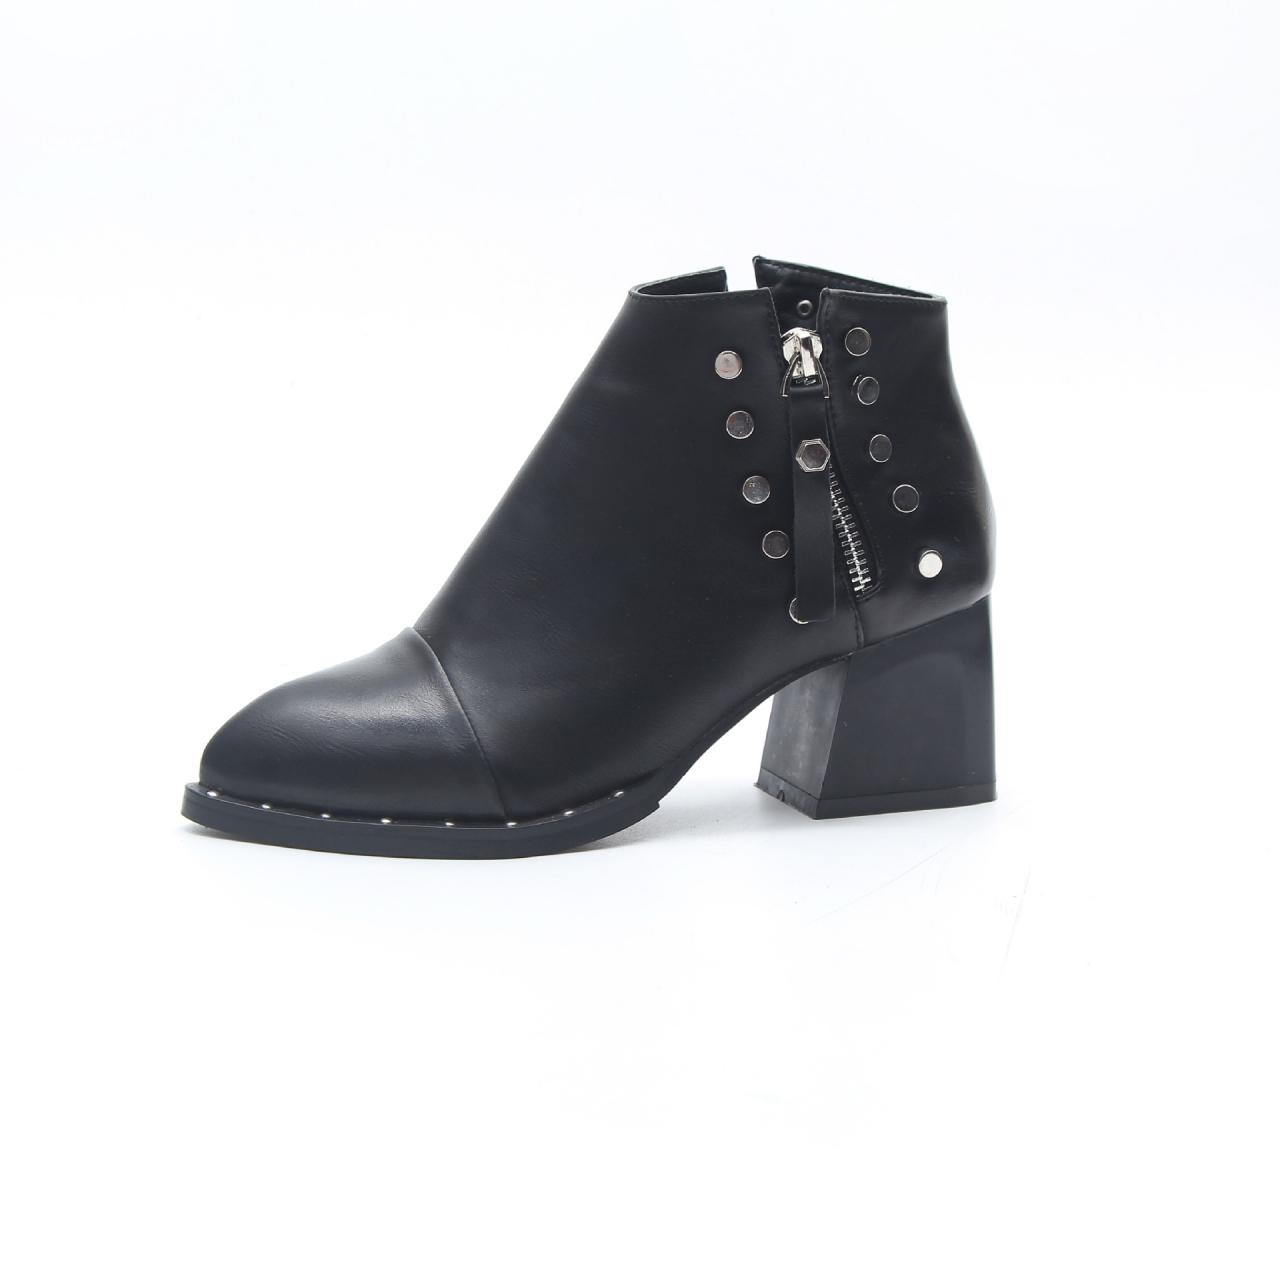 black rivet boots